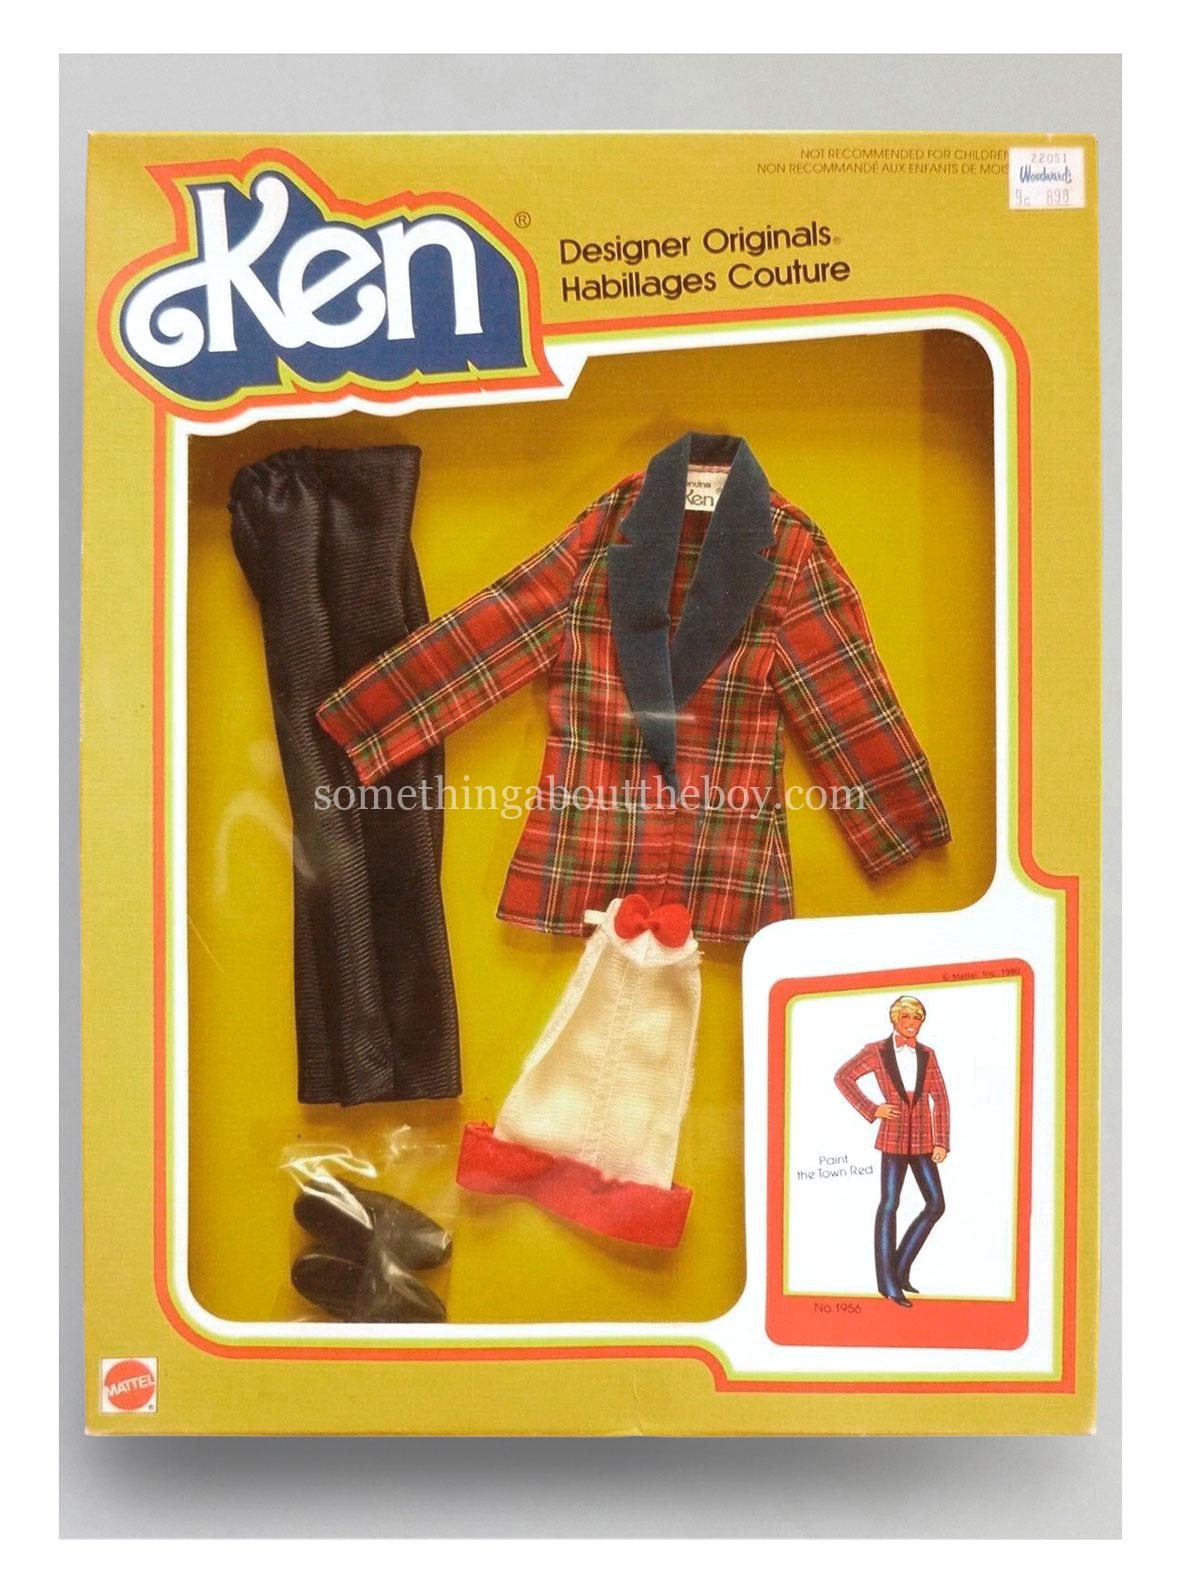 1981 Designer Originals #1956 in Canadian/European packaging